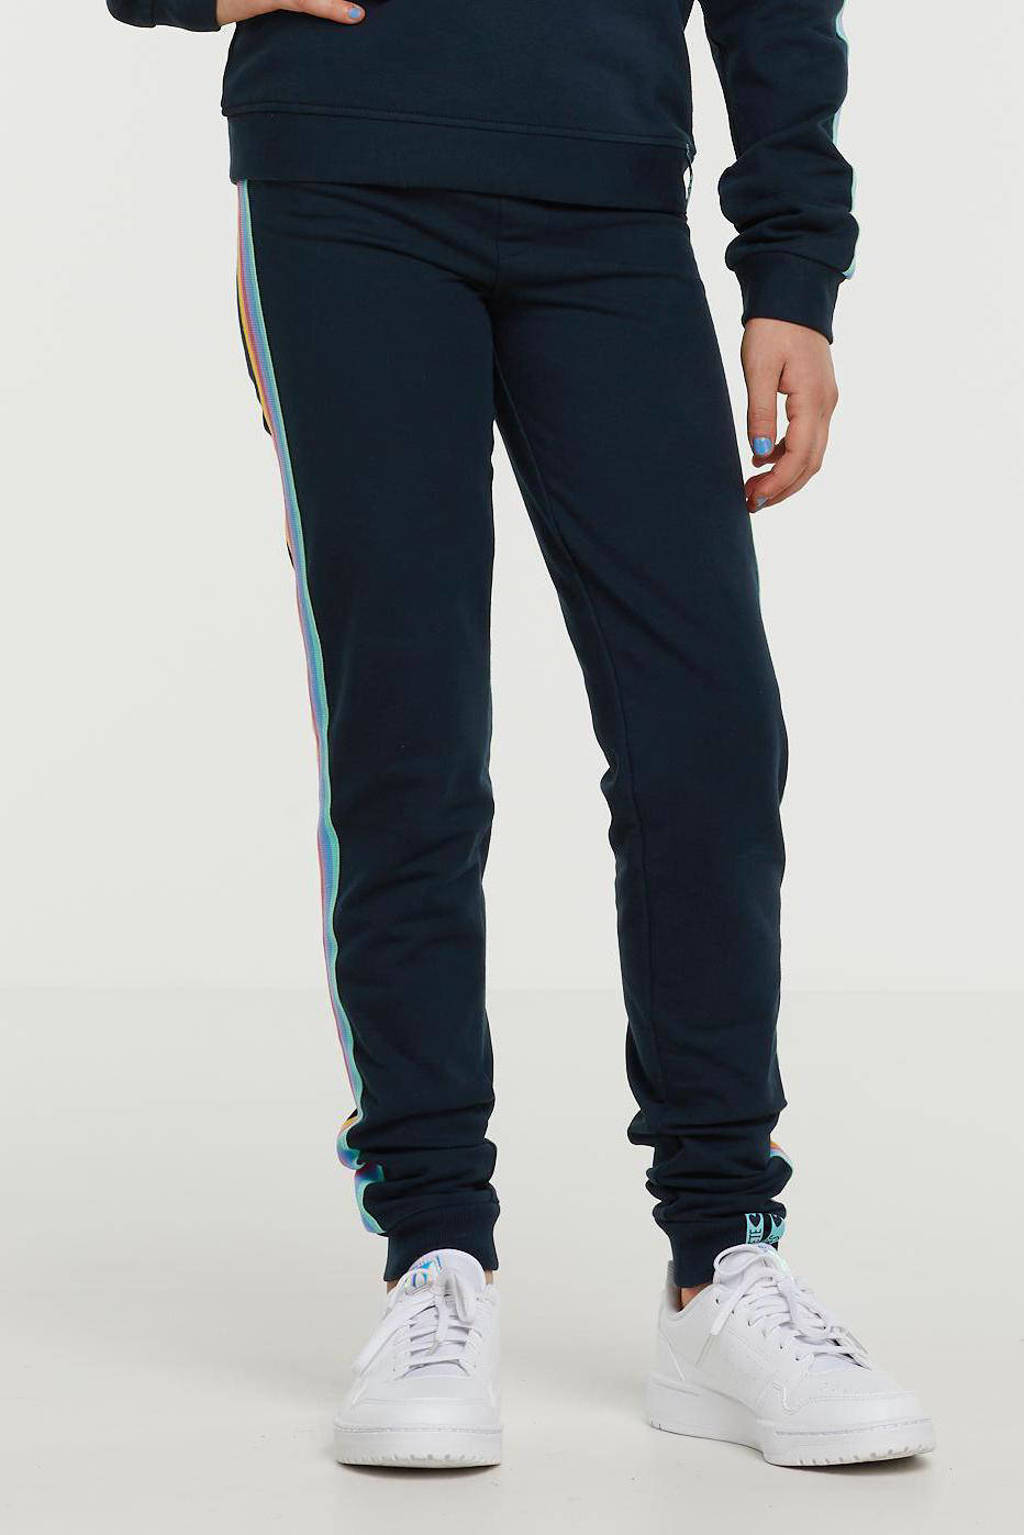 De Zoete Zusjes by Wehkamp slim fit broek met zijstreep donkerblauw/geel/roze/groen, Donkerblauw/geel/roze/groen